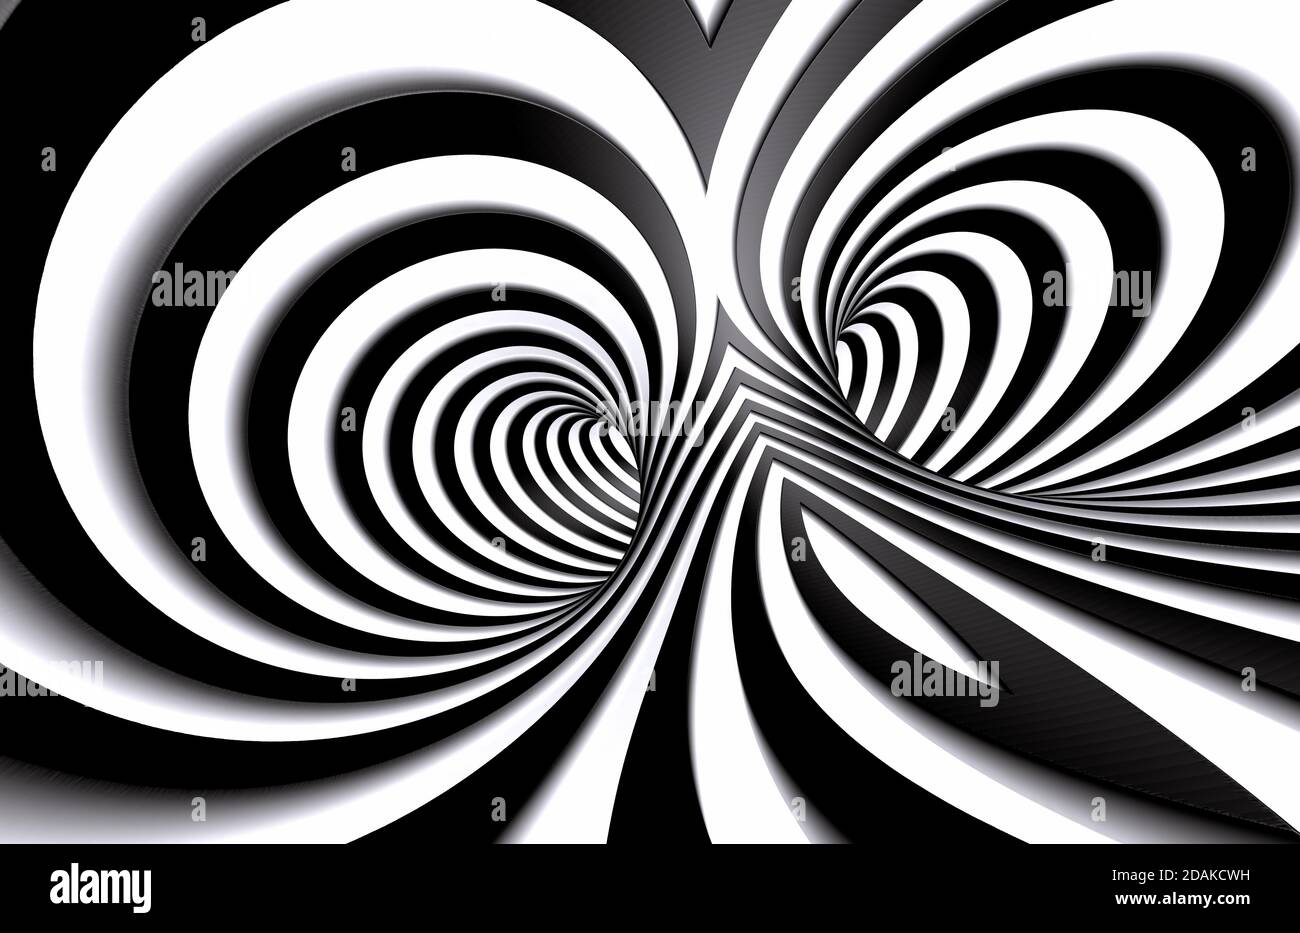 Abstrakter Tunnel oder unendliches Loch im Konzept von Schwindel. Abstrakter Spiralhintergrund in schwarz-weißem Muster. 3d-Illustration Stockfoto